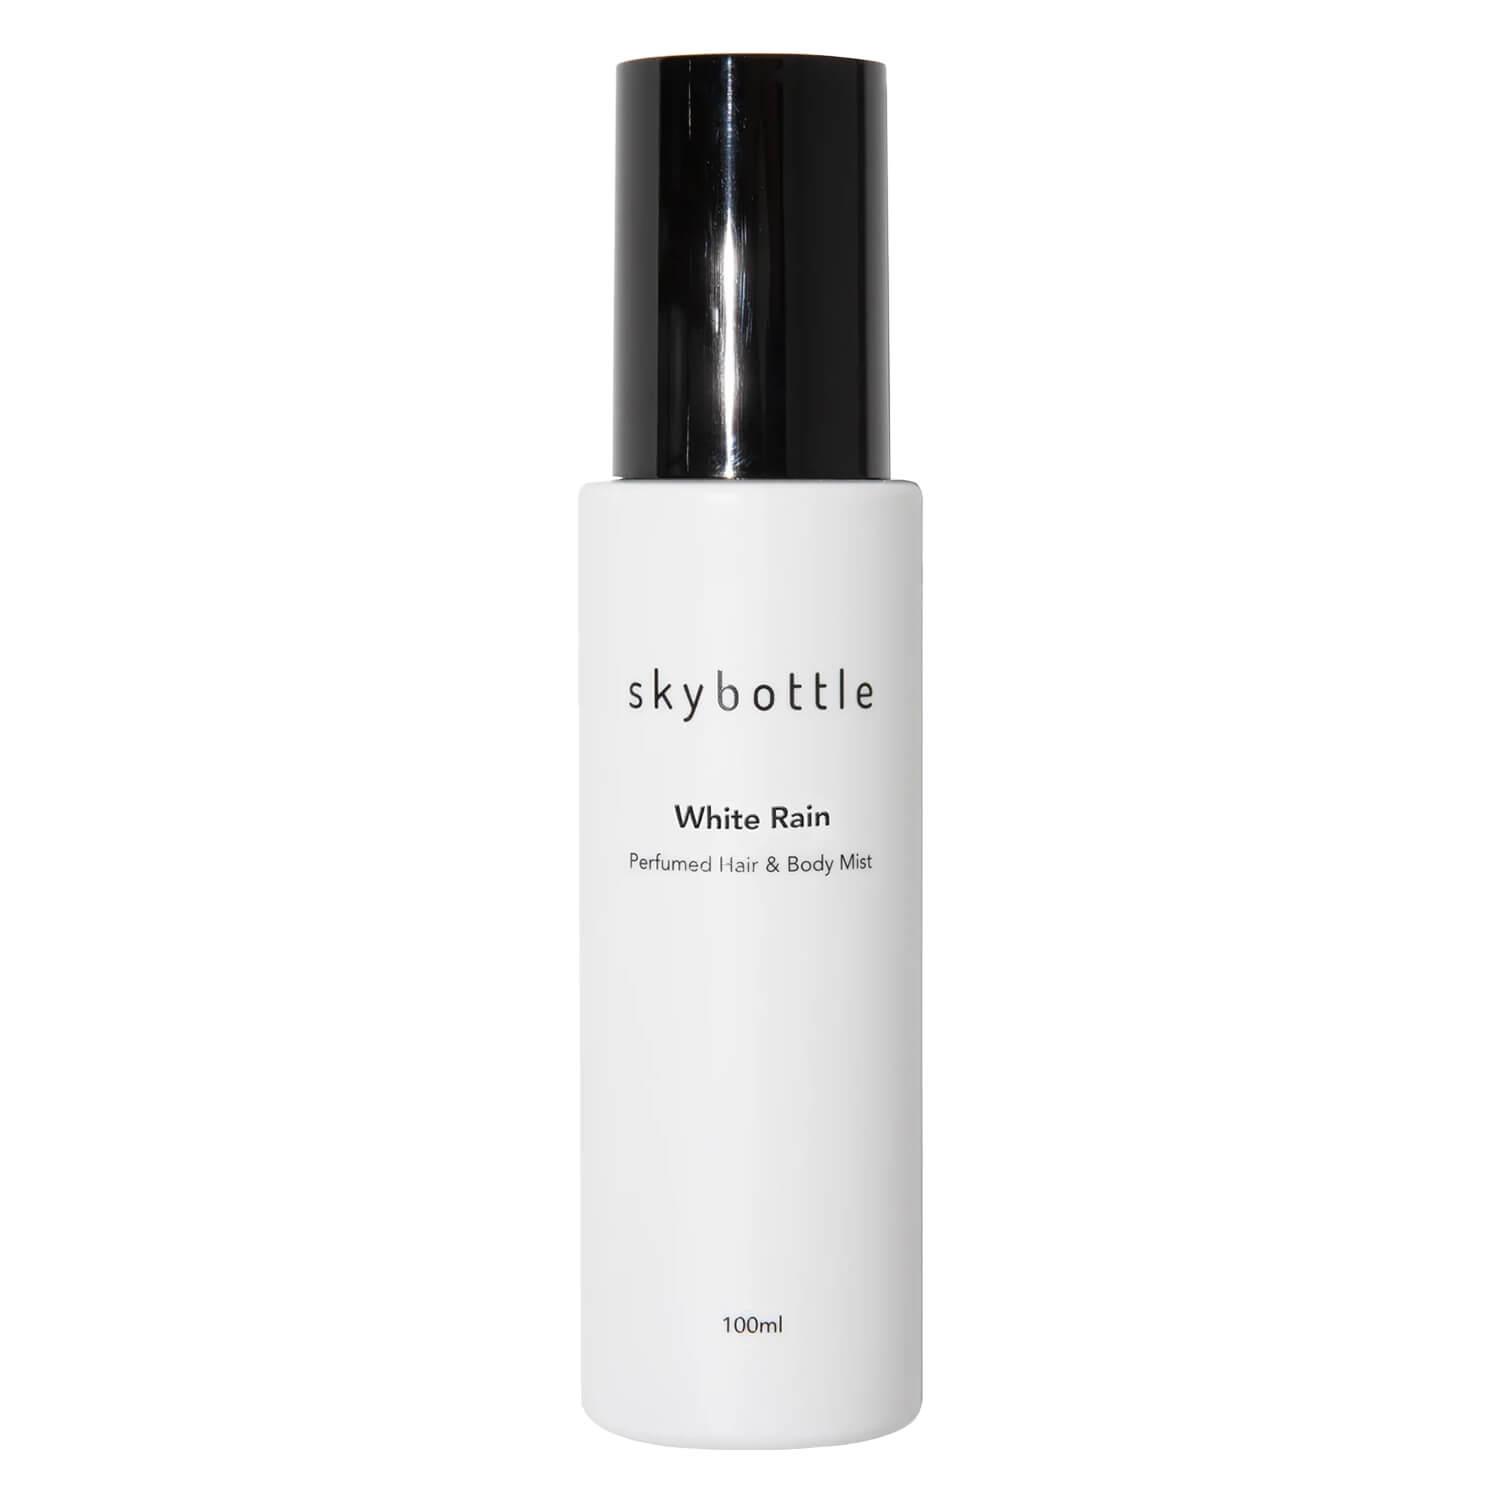 Skybottle - White Rain Perfumed Hair & Body Mist